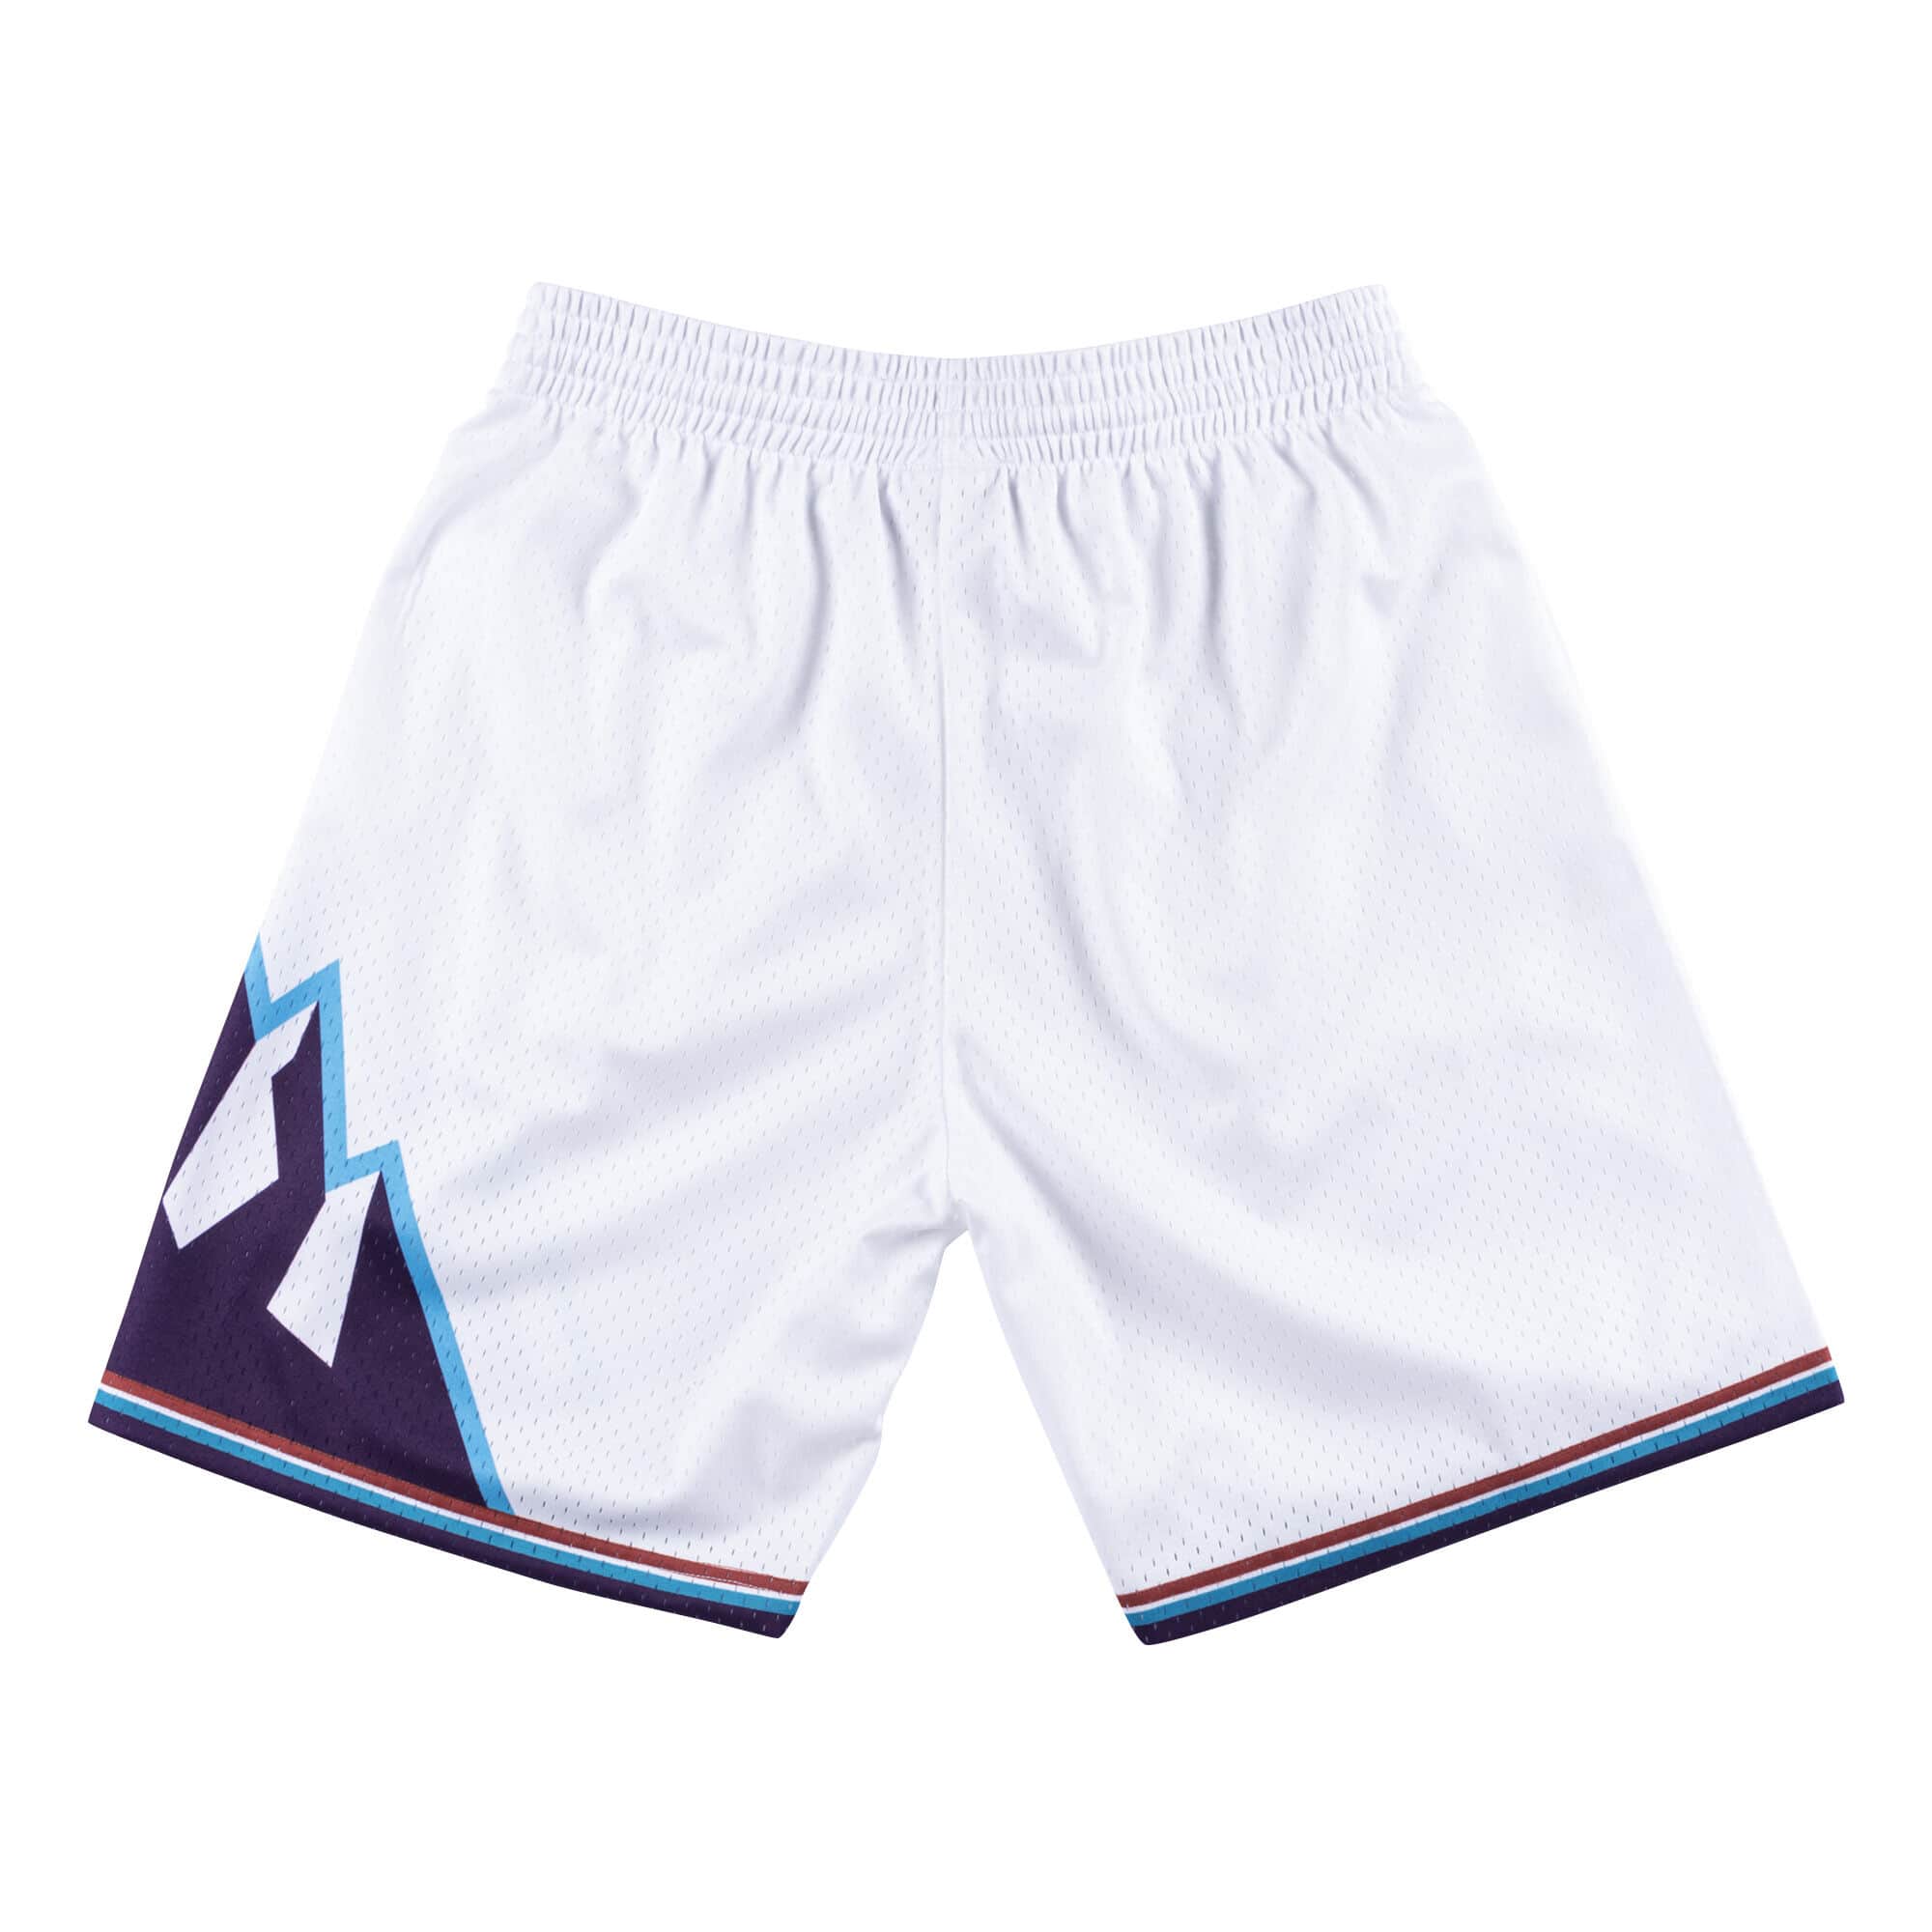 Mitchell & Ness Men's Utah Jazz Swingman Shorts White Large